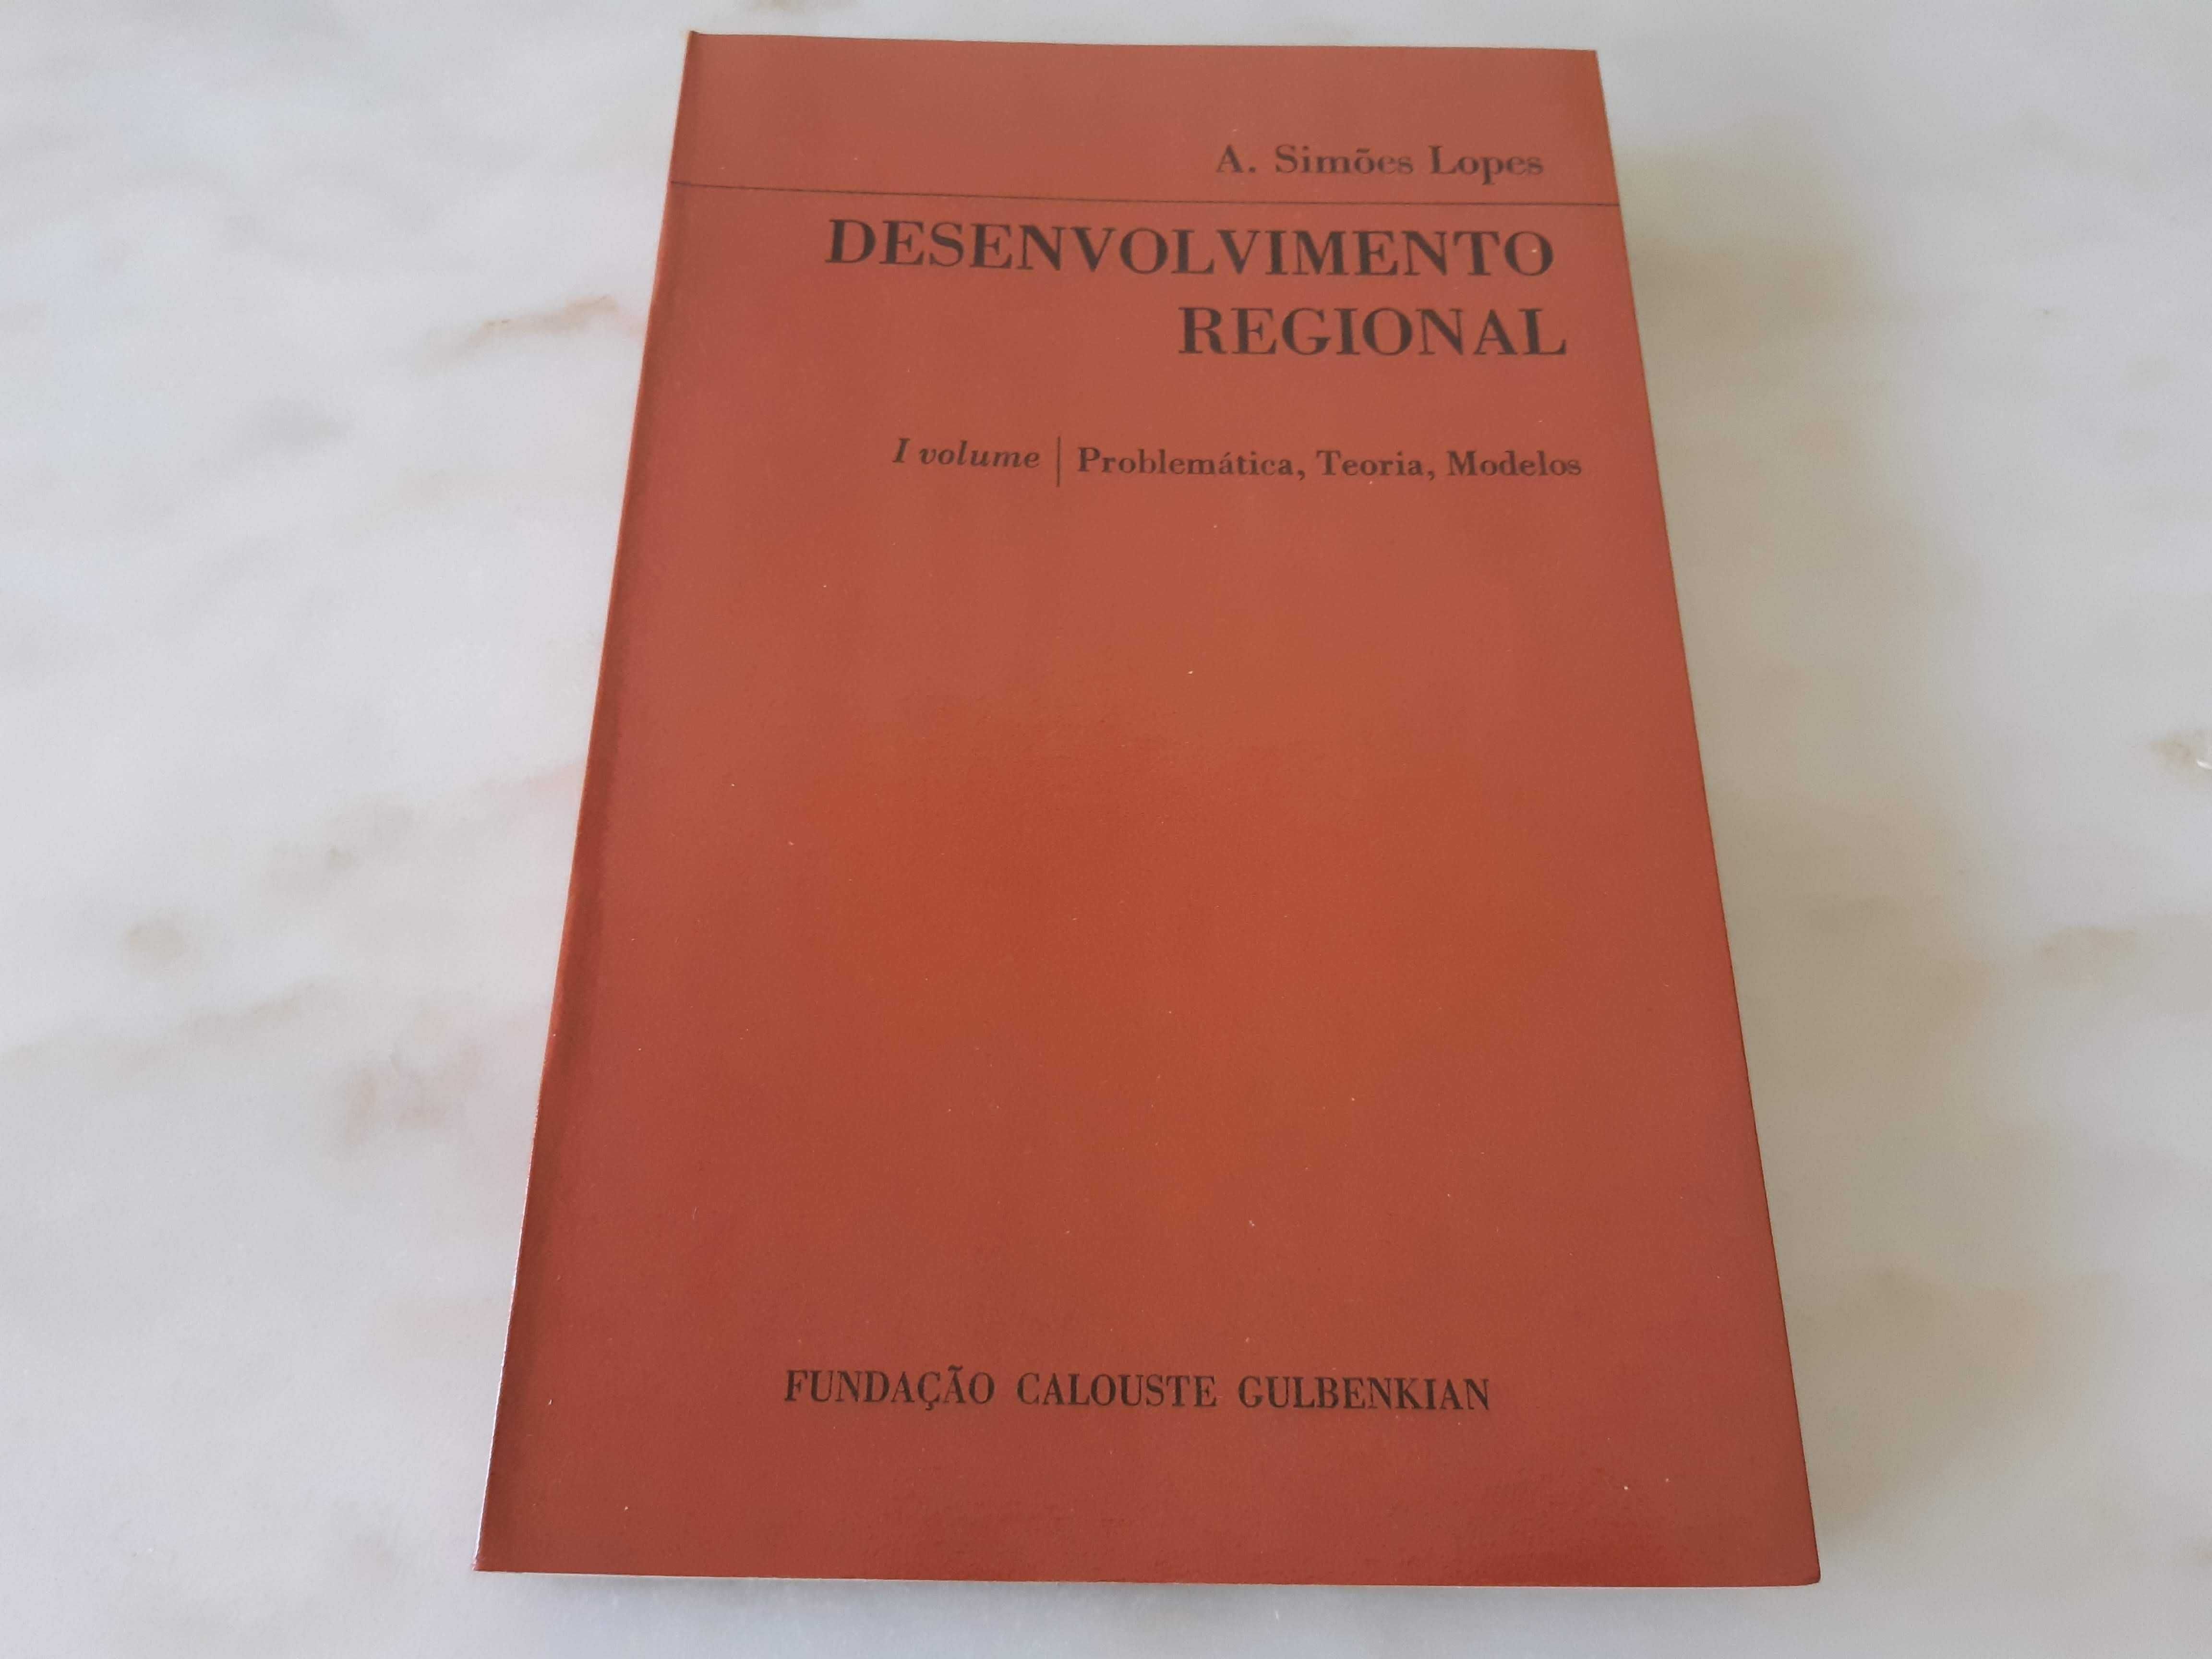 Livro "Desenvolvimento Regional", de Simões Lopes, como novo